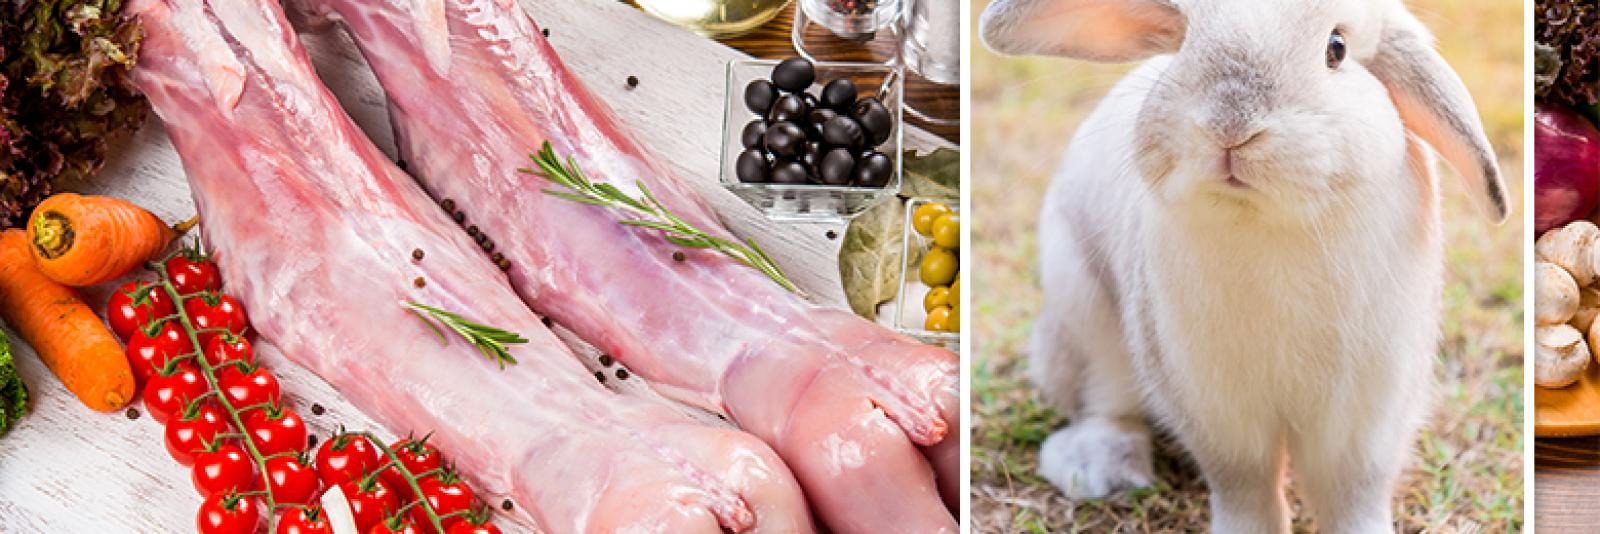 Ontvangende machine Dwang botsing Acht supermarkten stoppen met verkoop van konijnenvlees - NH Nieuws